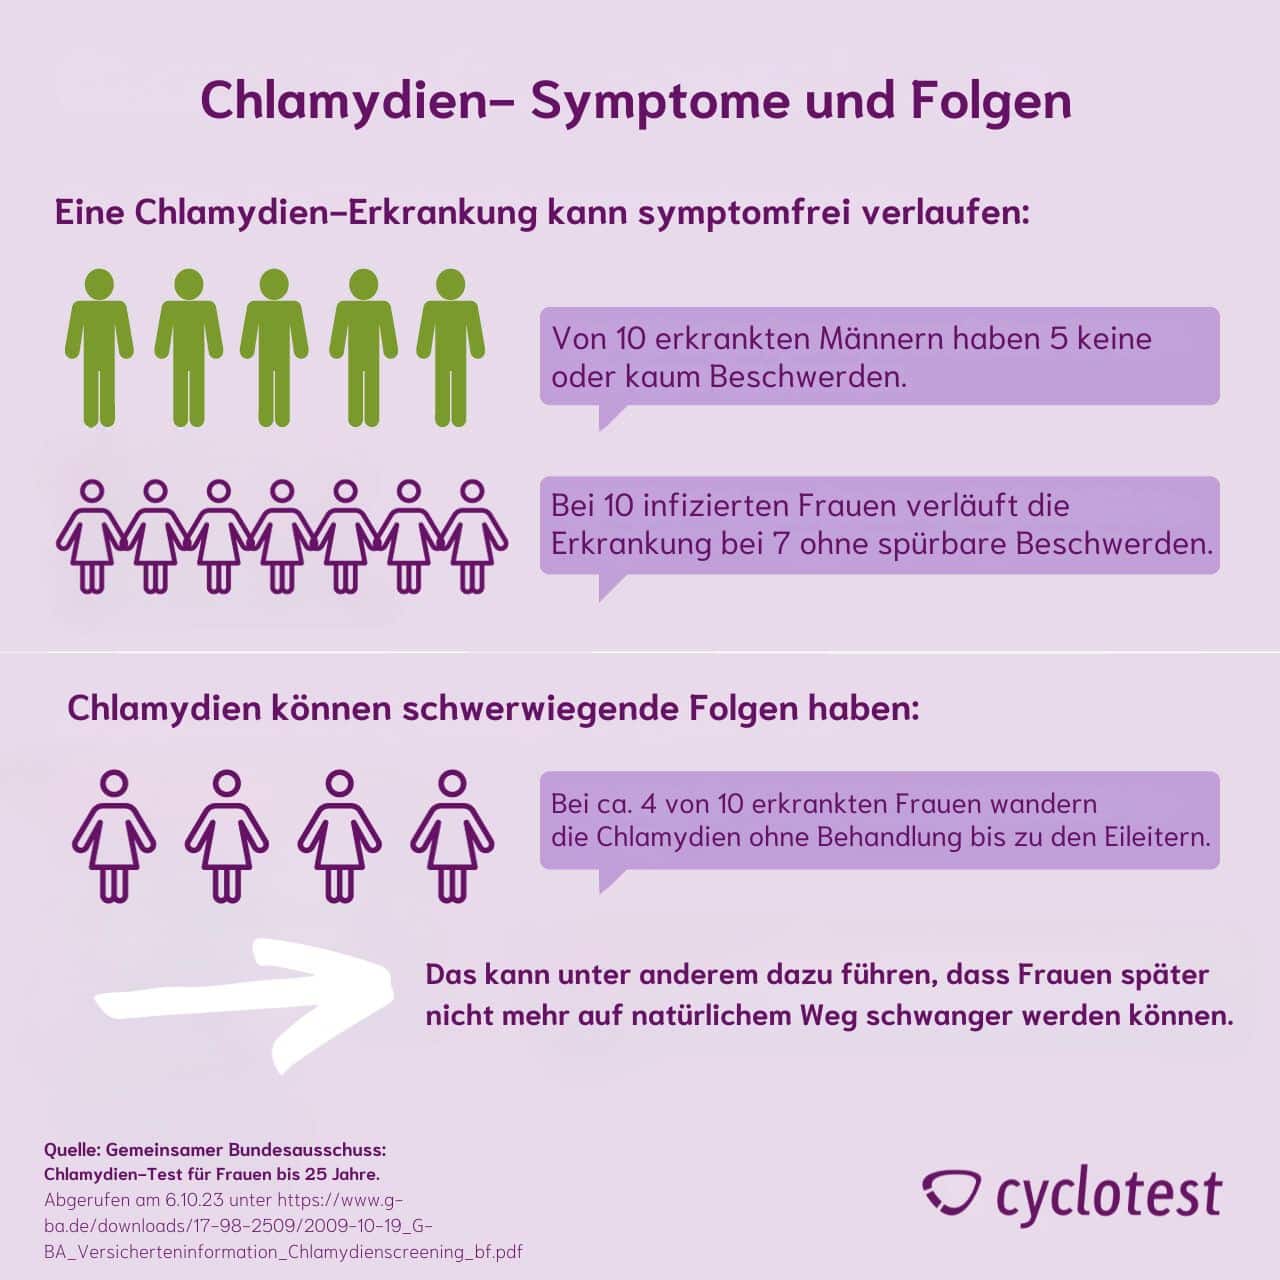 Symptome und Folgen von unbehandelten Chlamydien bei Männern und Frauen